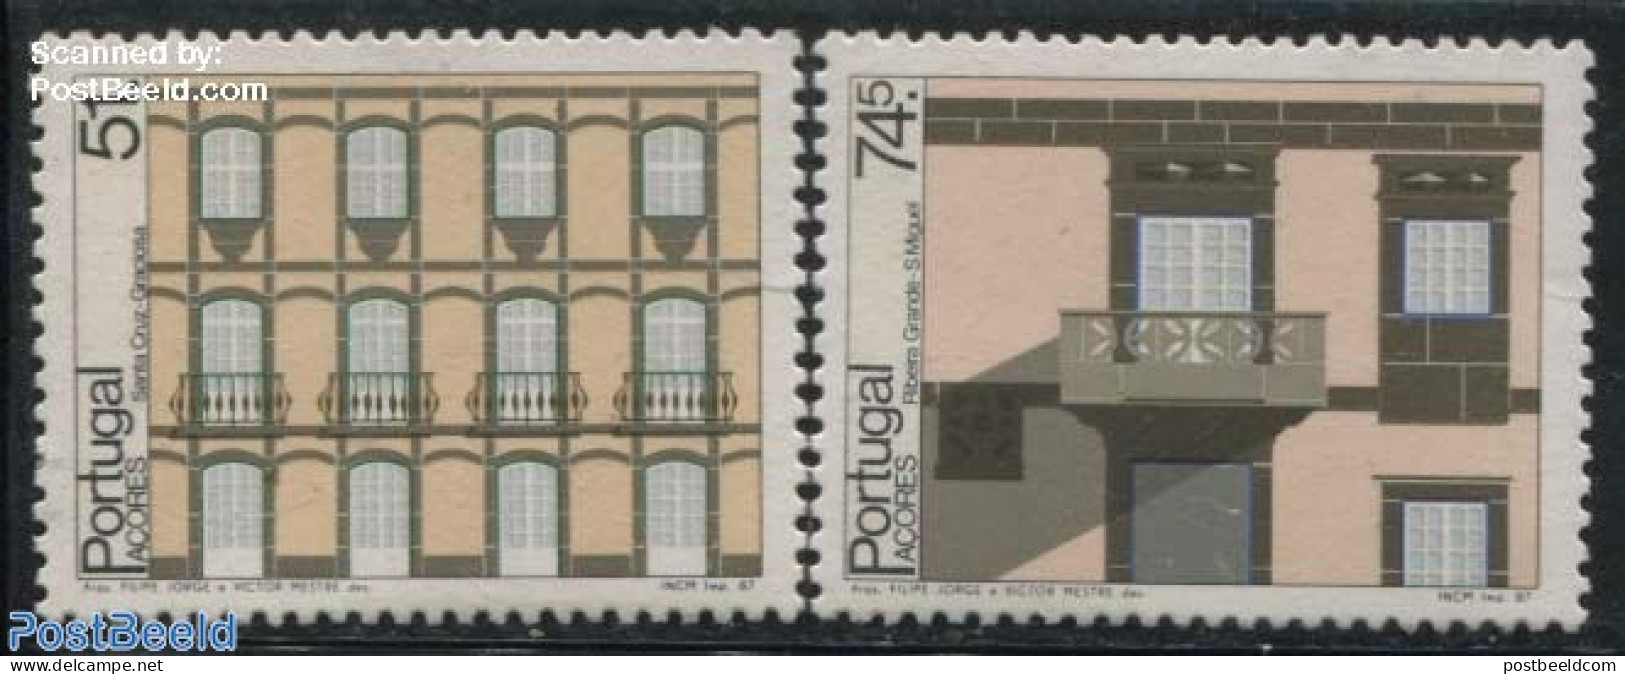 Azores 1987 Architecture 2v, Mint NH, Art - Architecture - Açores